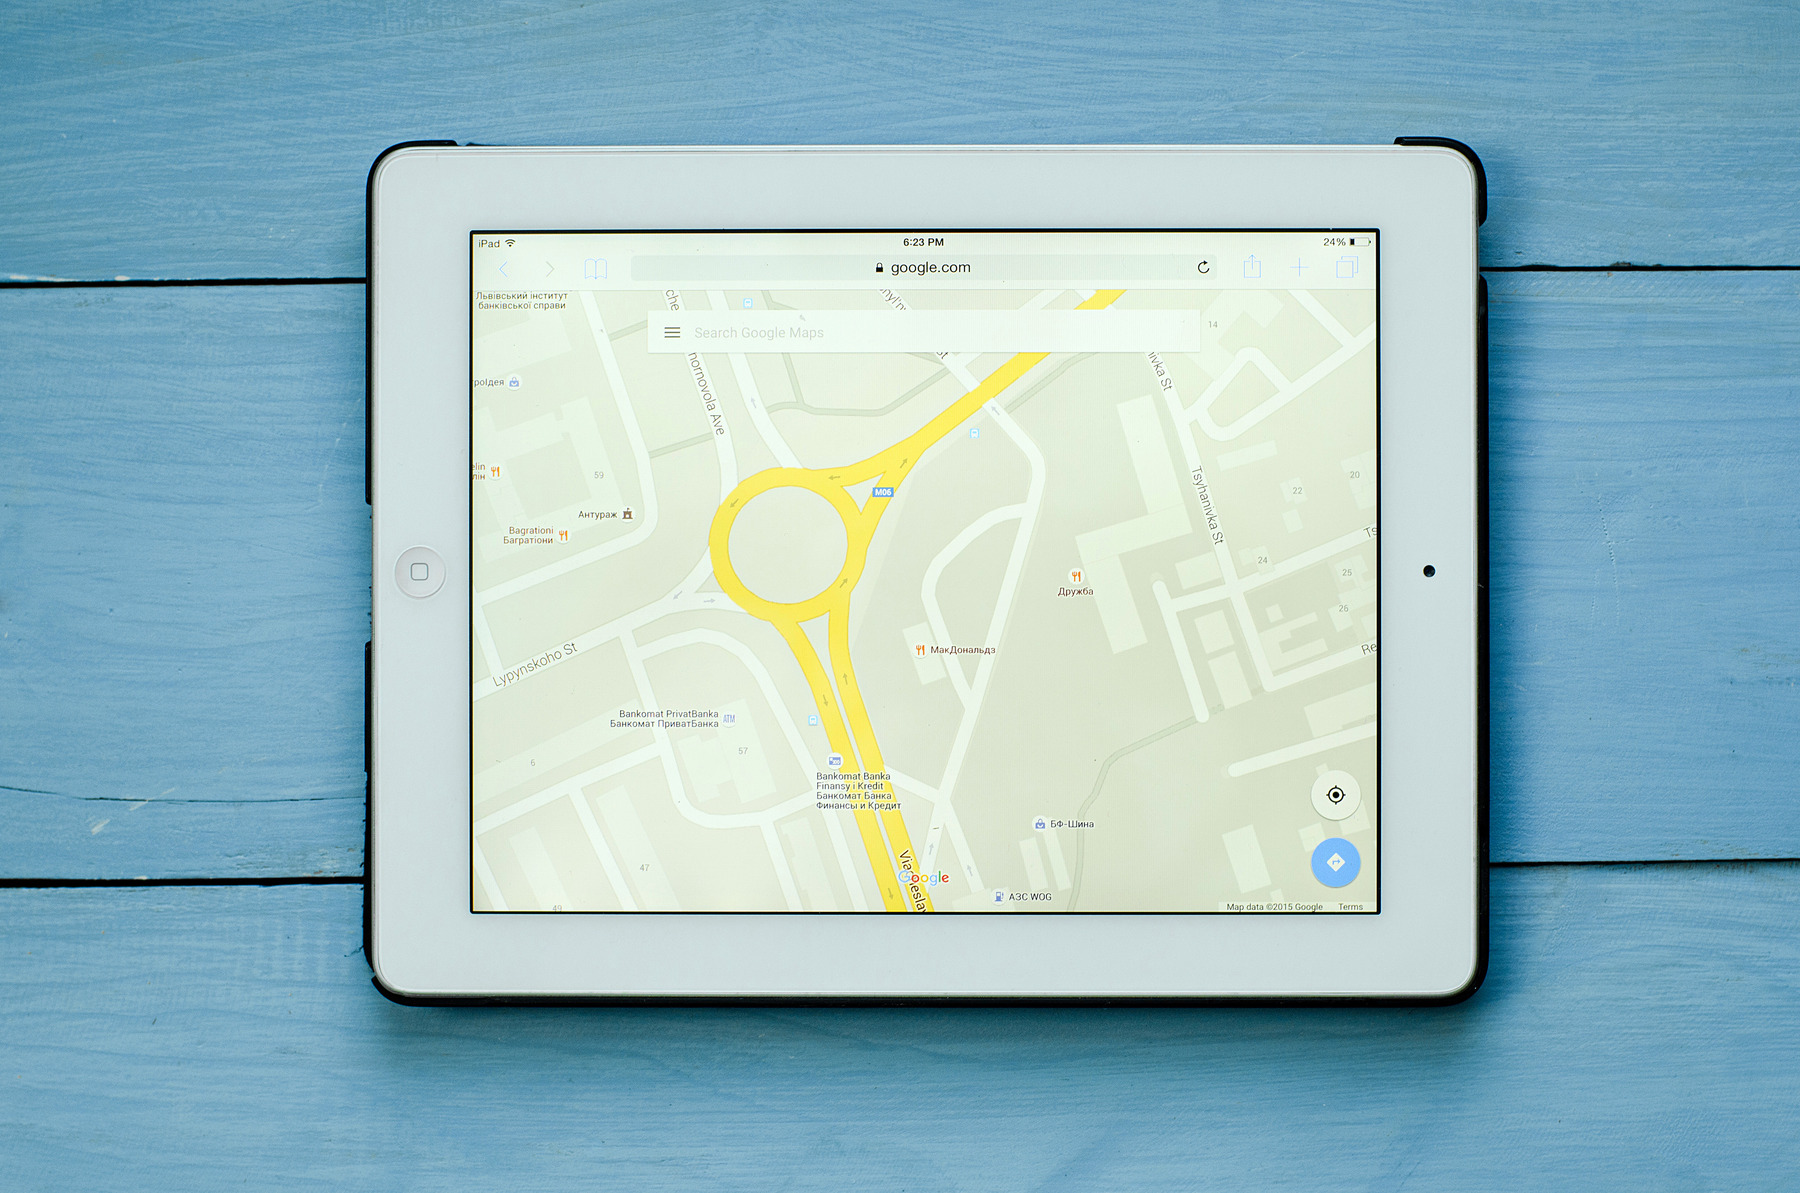 Ein iPad, auf dem die App Google Maps in Benutzung zu sehen ist.